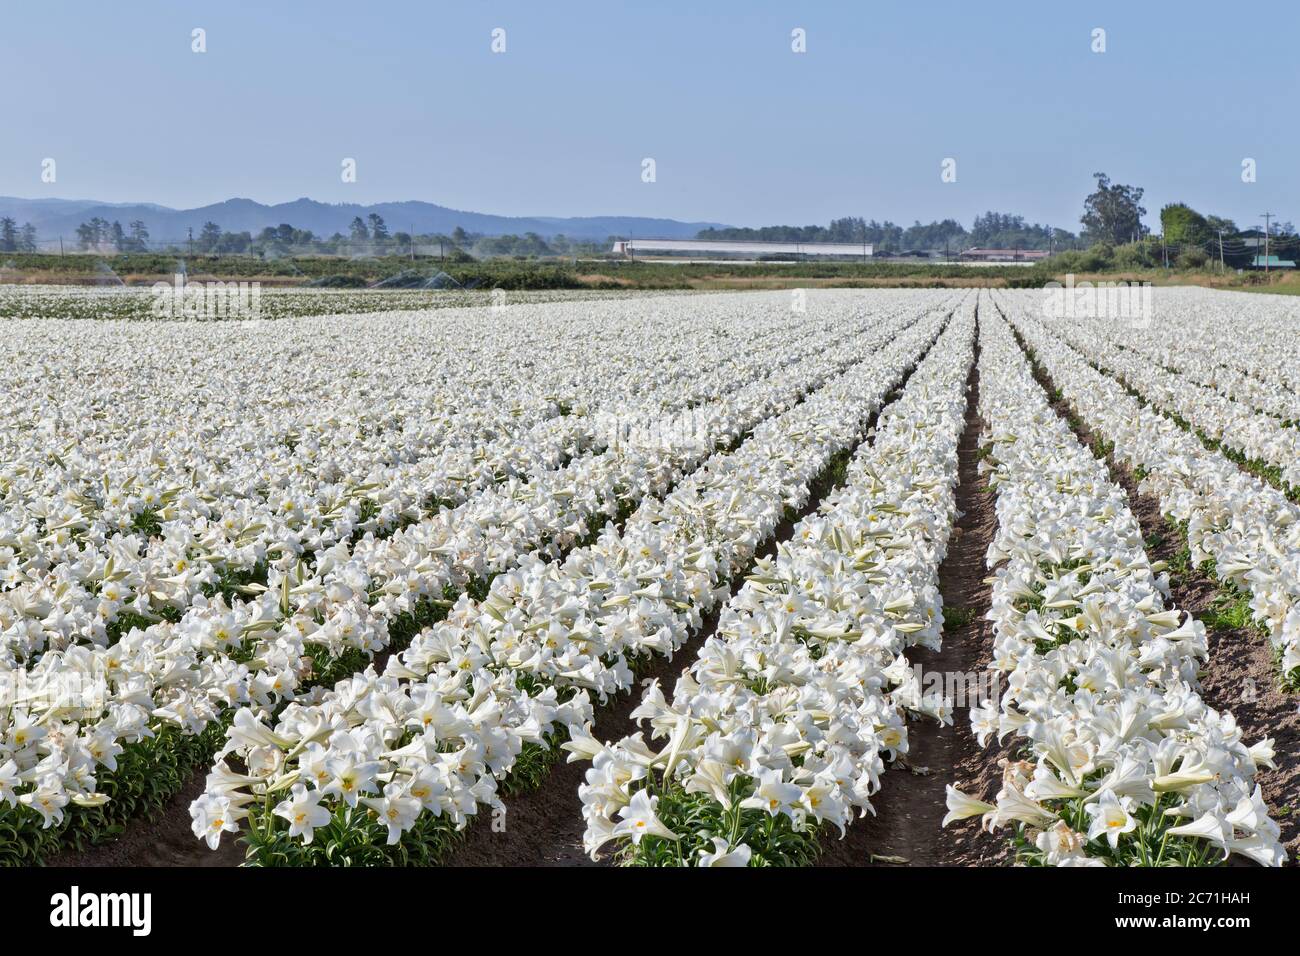 Ferme de lilies de Pâques 'Lilium longiflorum', rangées de lilies florissantes, rangées convergentes, irriguant le champ adjacent, Californie. Banque D'Images